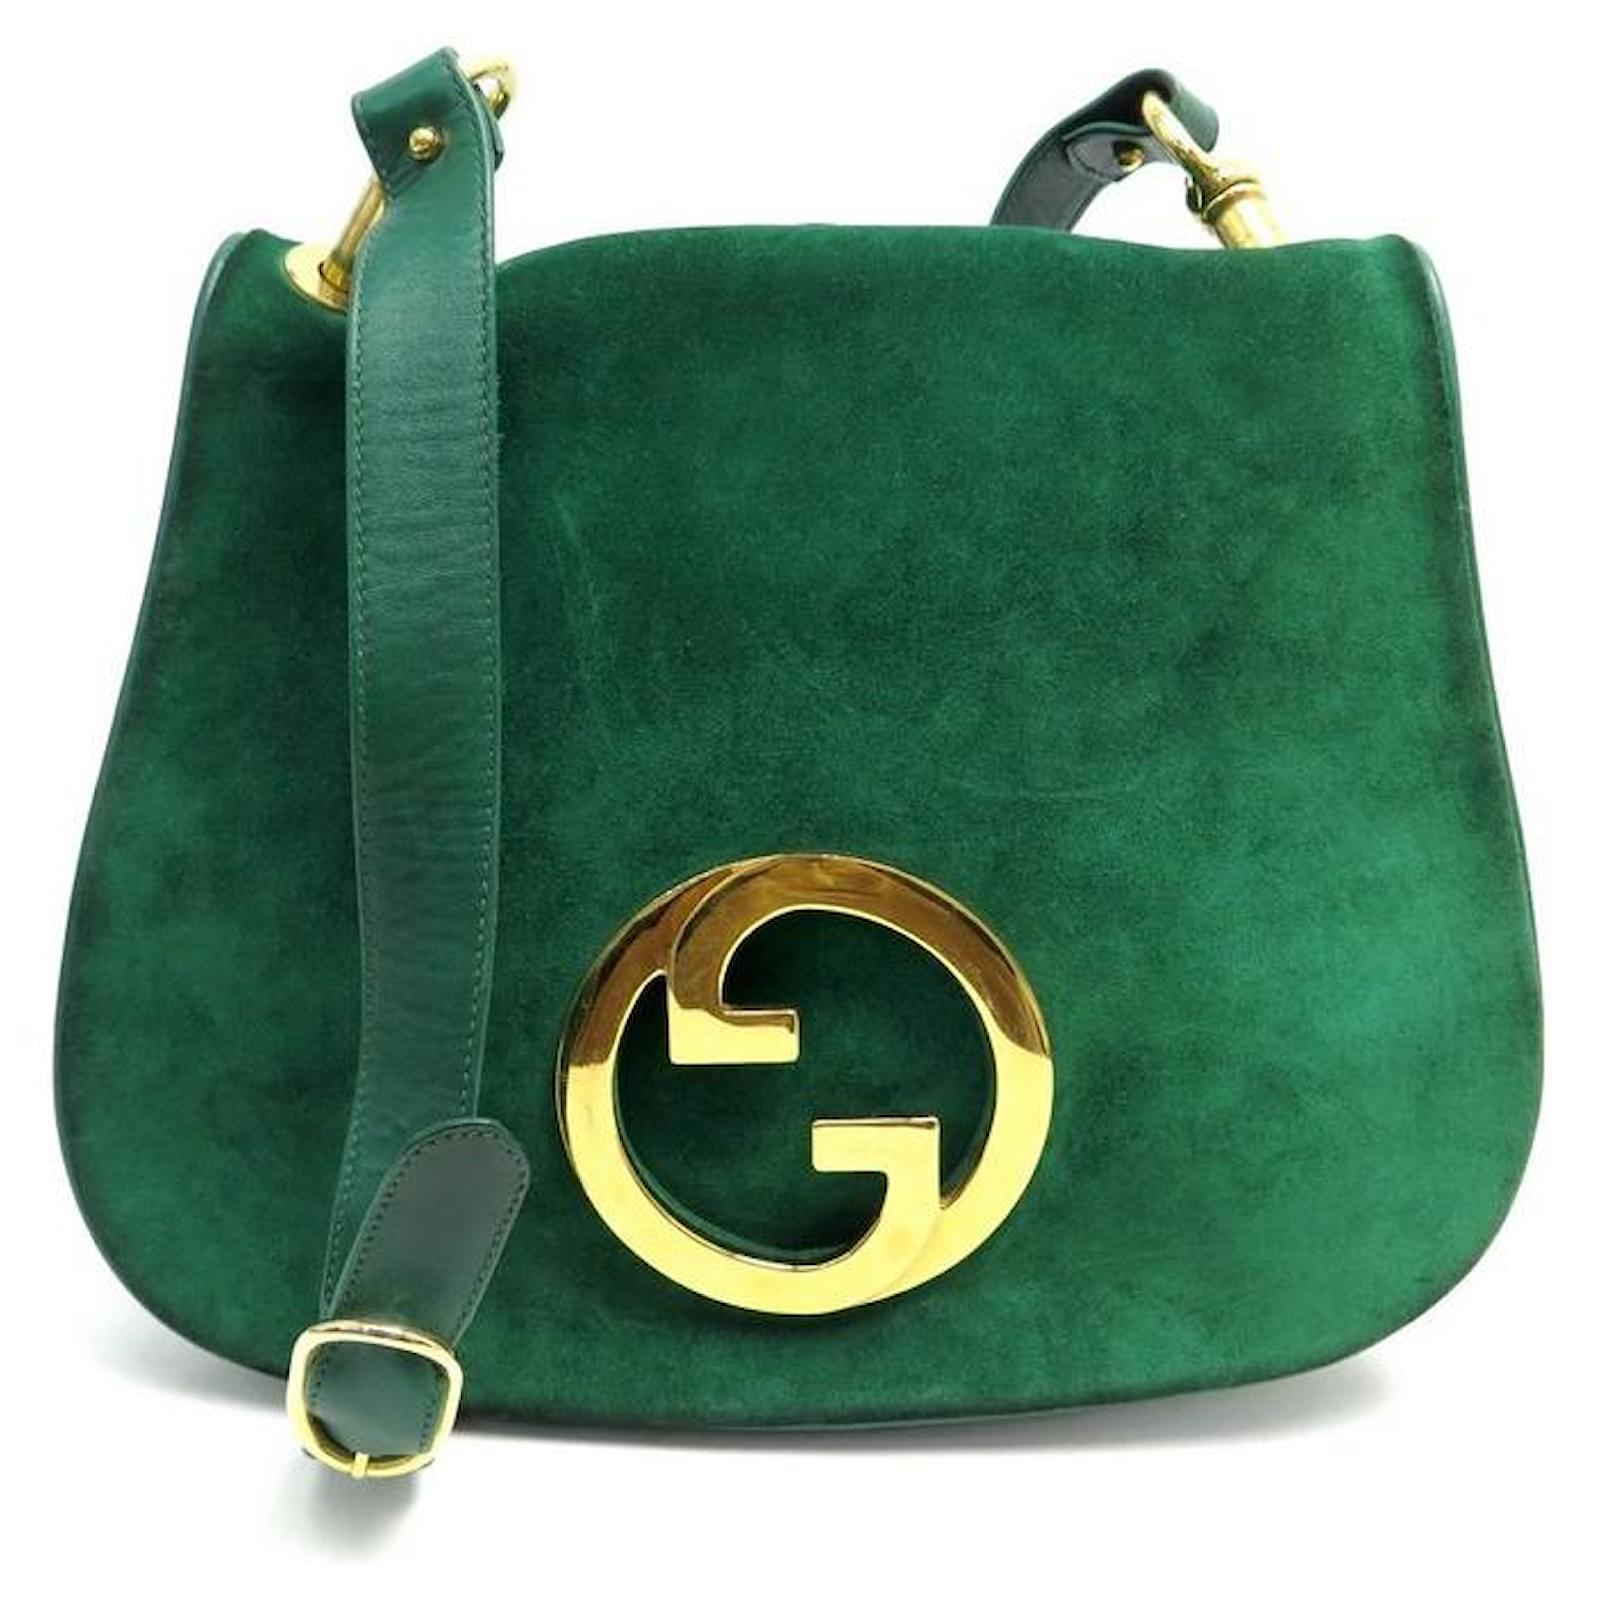 1970 Vintage Gucci Handbag  Vintage gucci purse, Gucci handbags